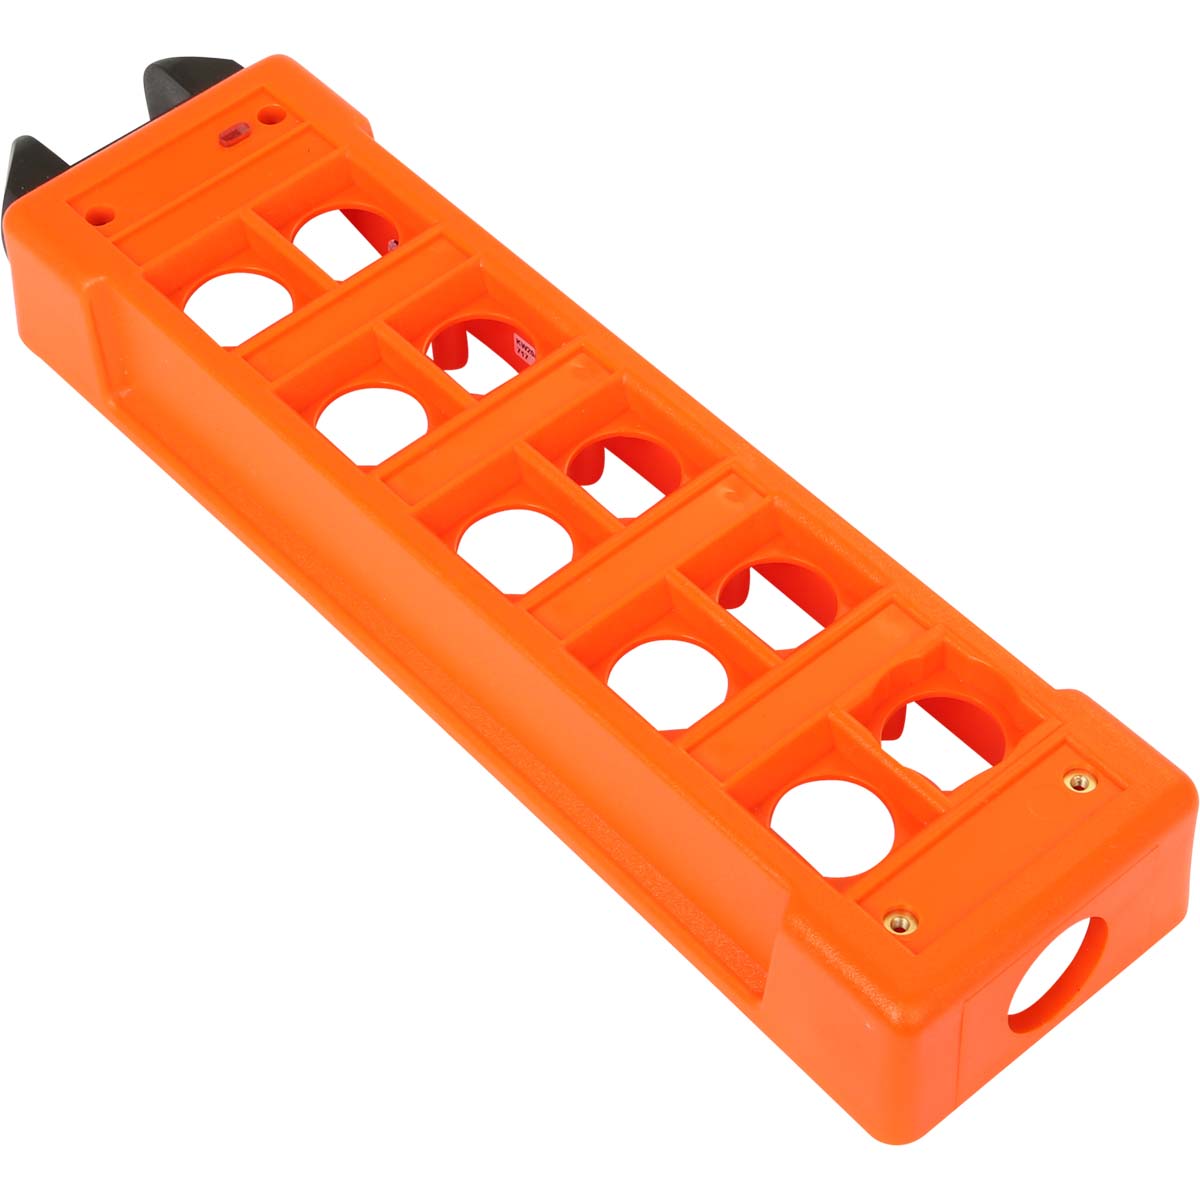 Sendergehäuse Oberteil micron 3/5, orange, für 10 Tasten und Schlüsselschalter